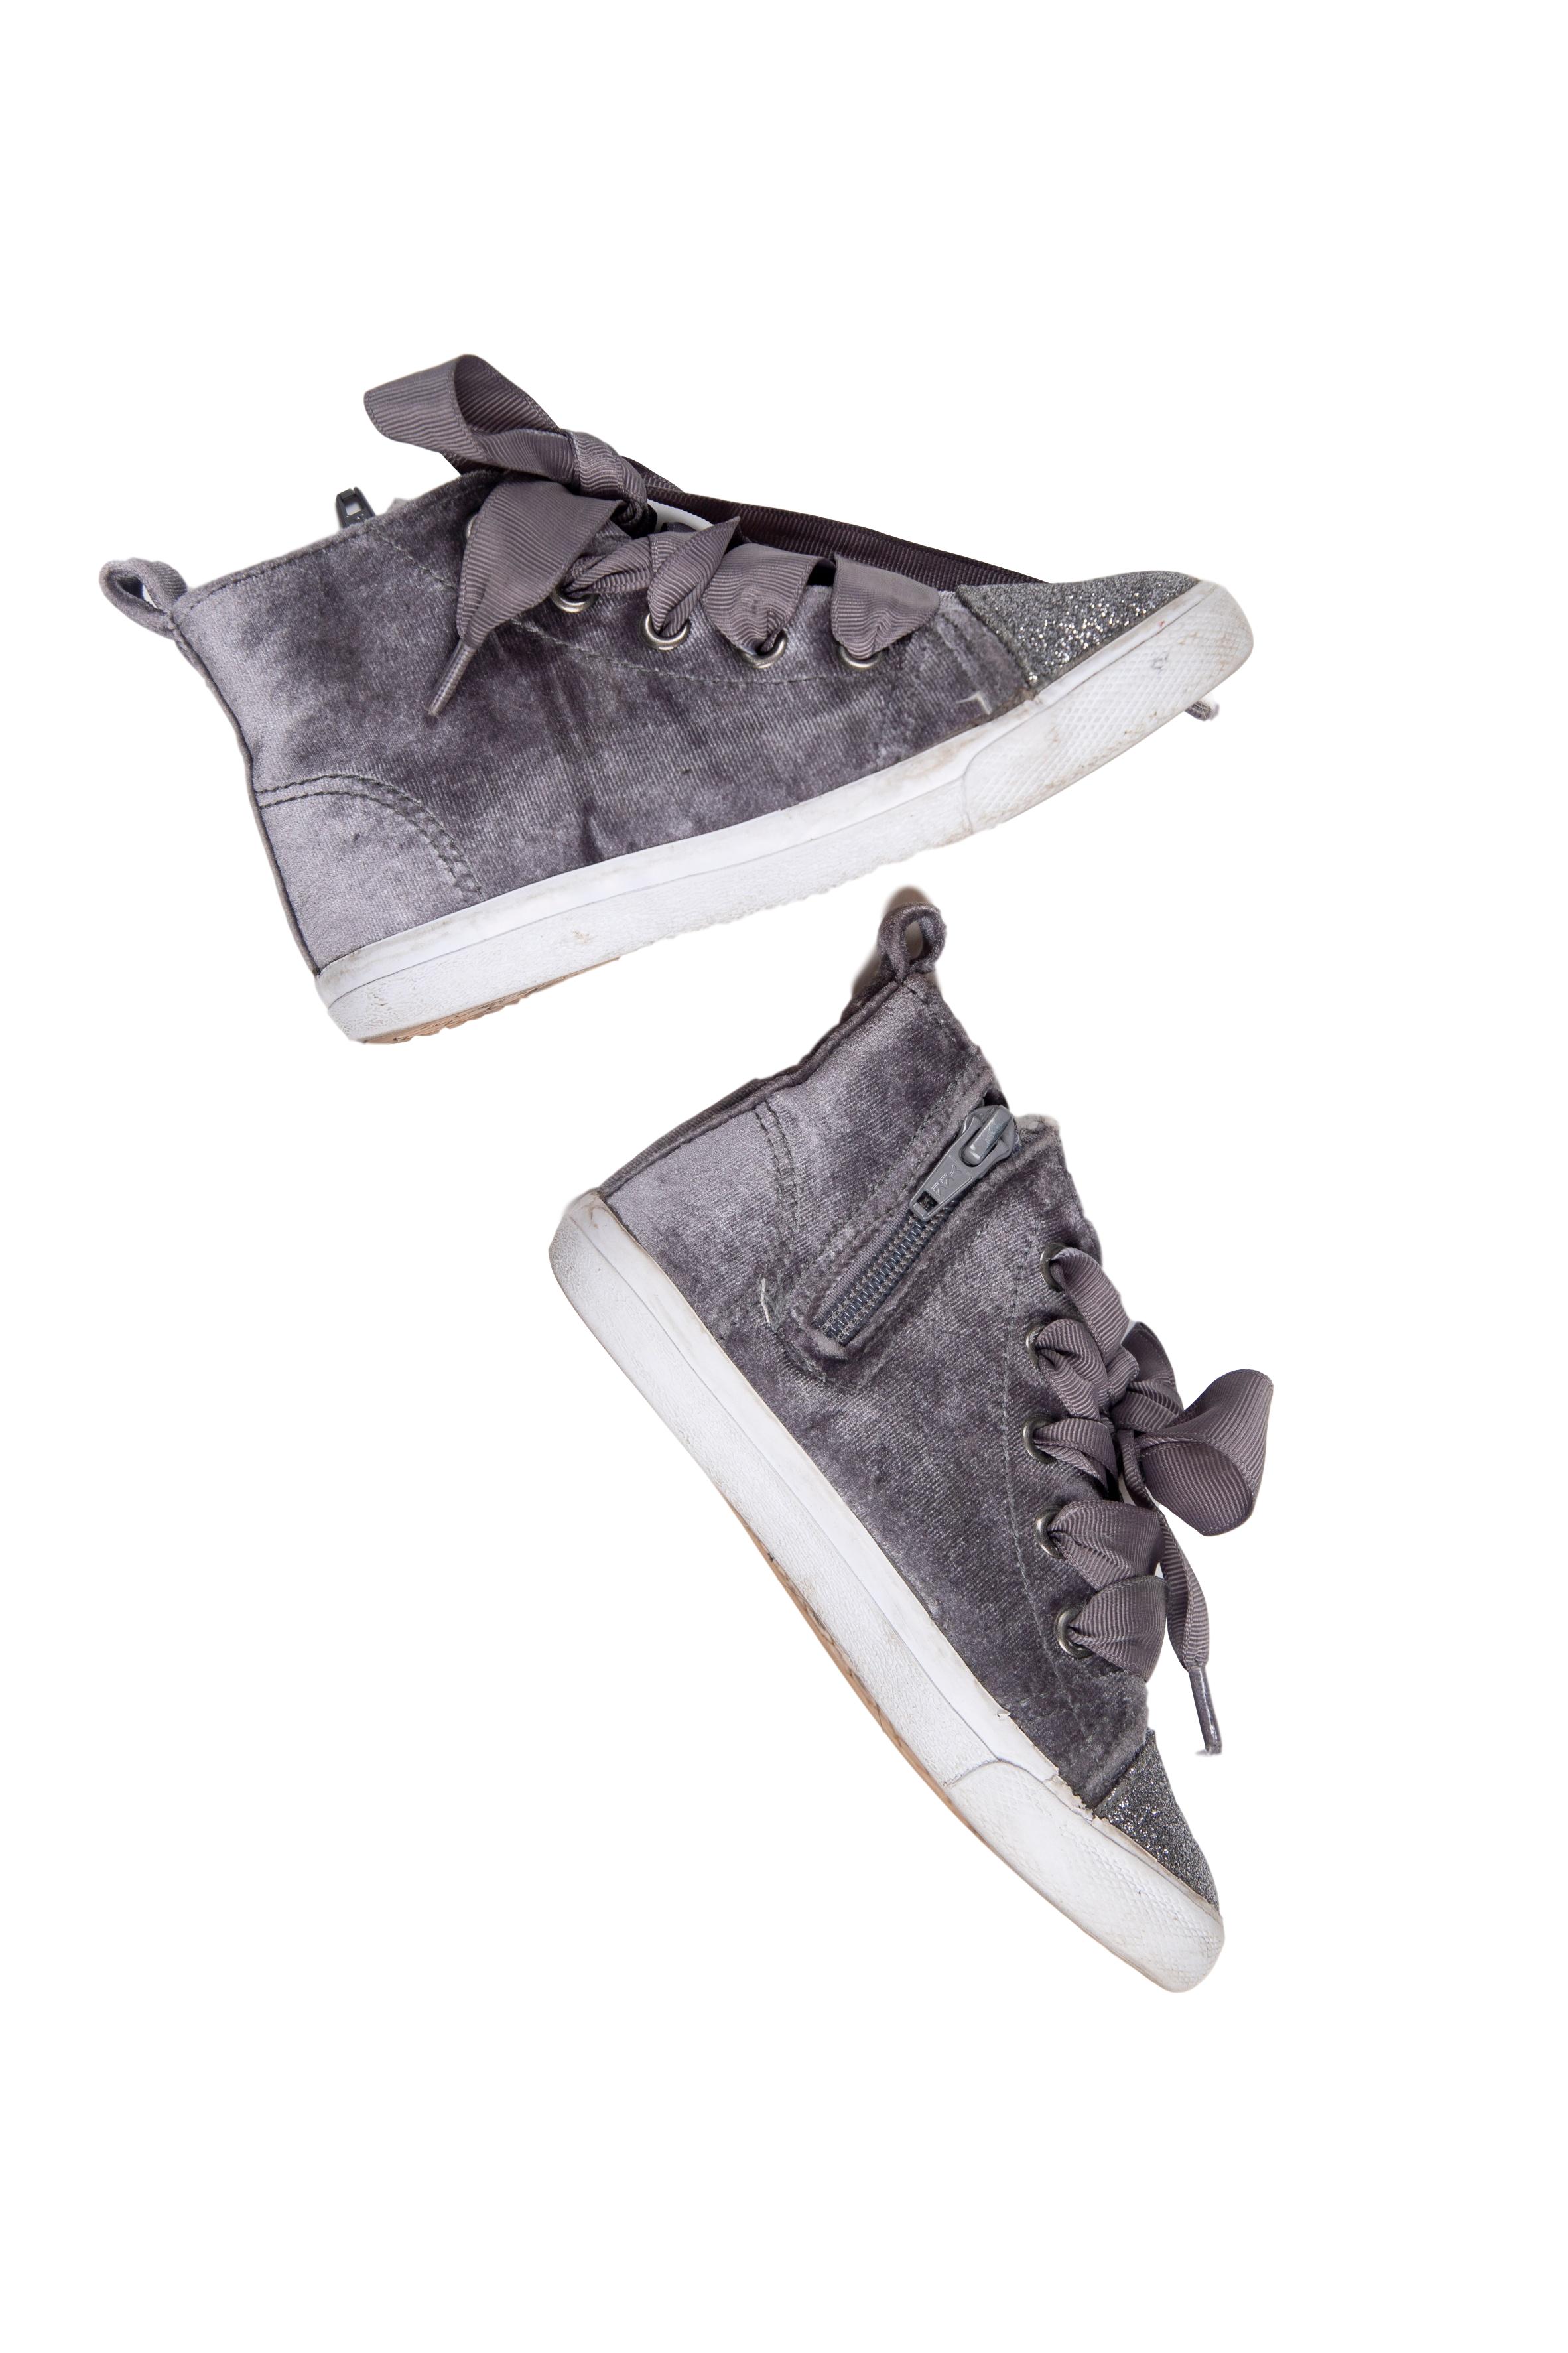 Zapatillas tipo botín color gris de terciopelo con punta escarchada. Con cierre al lado y pasadores. Talla US 9 - Cat & Jack